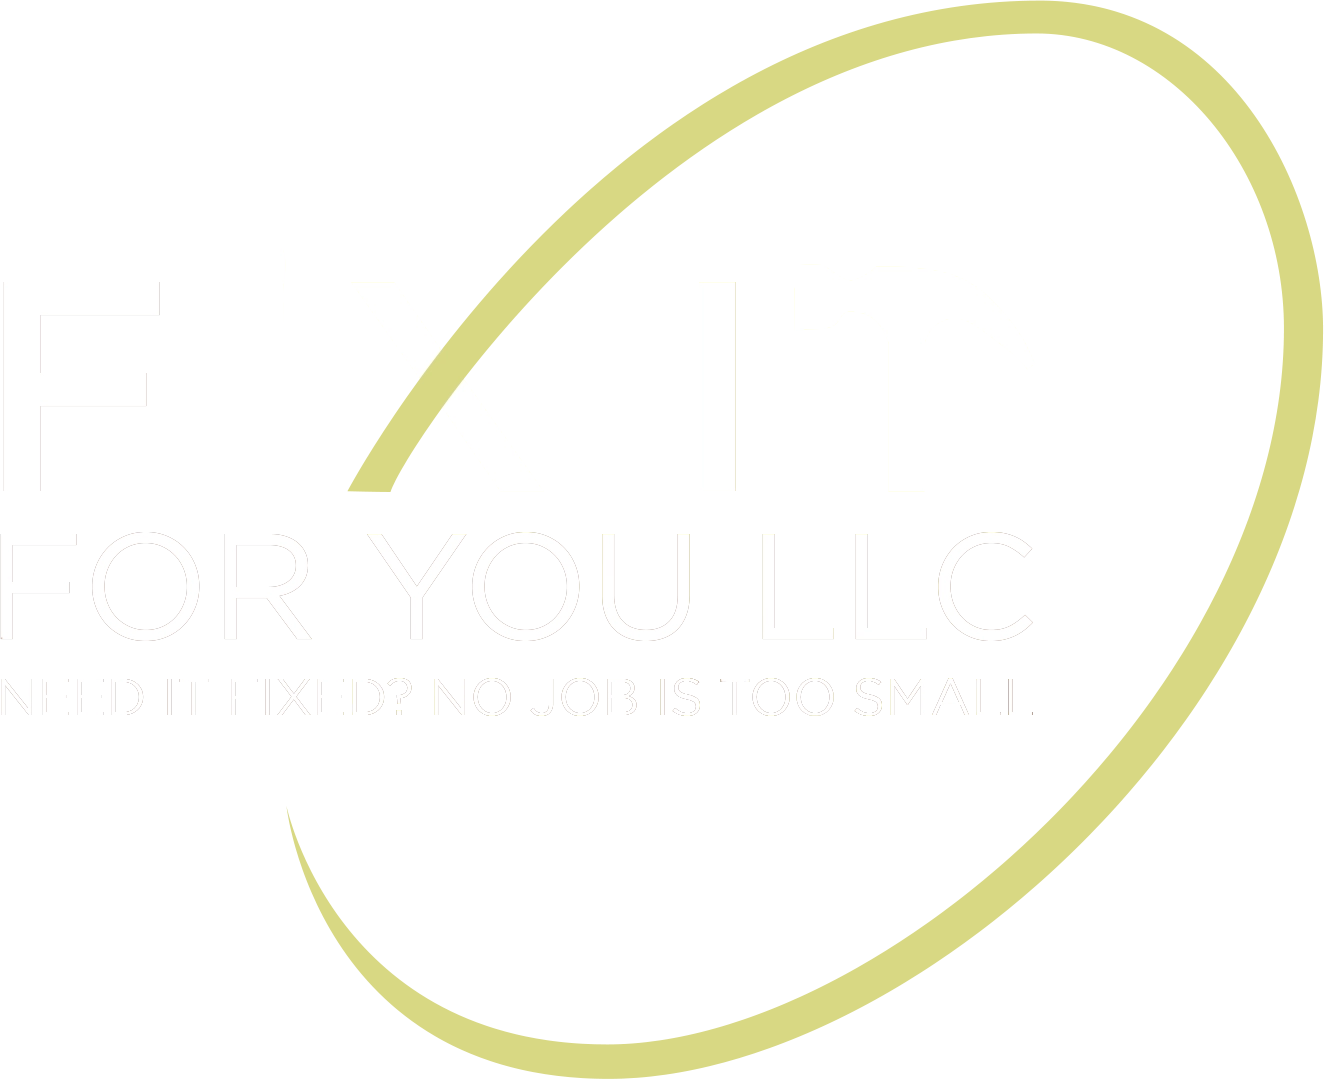 Fix it For You, LLC Logo